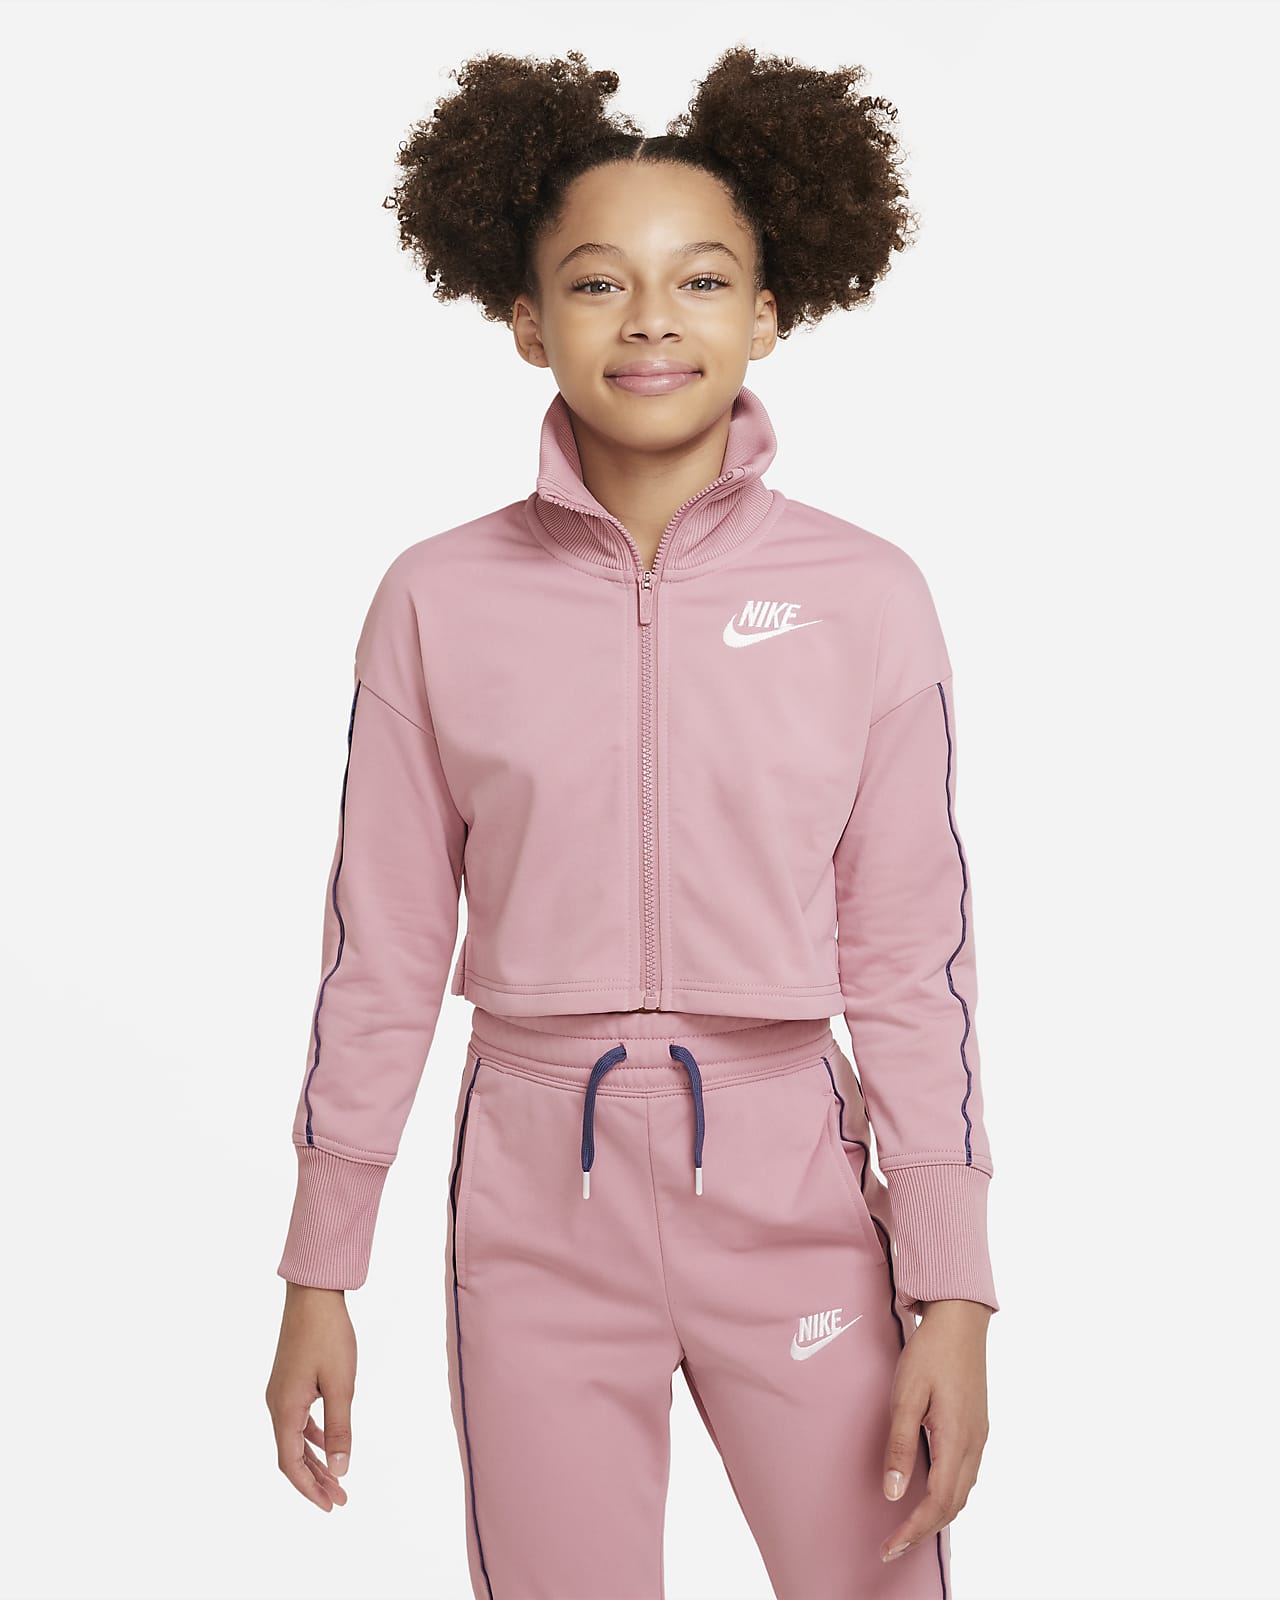 Girls' Tracksuits. Nike CA